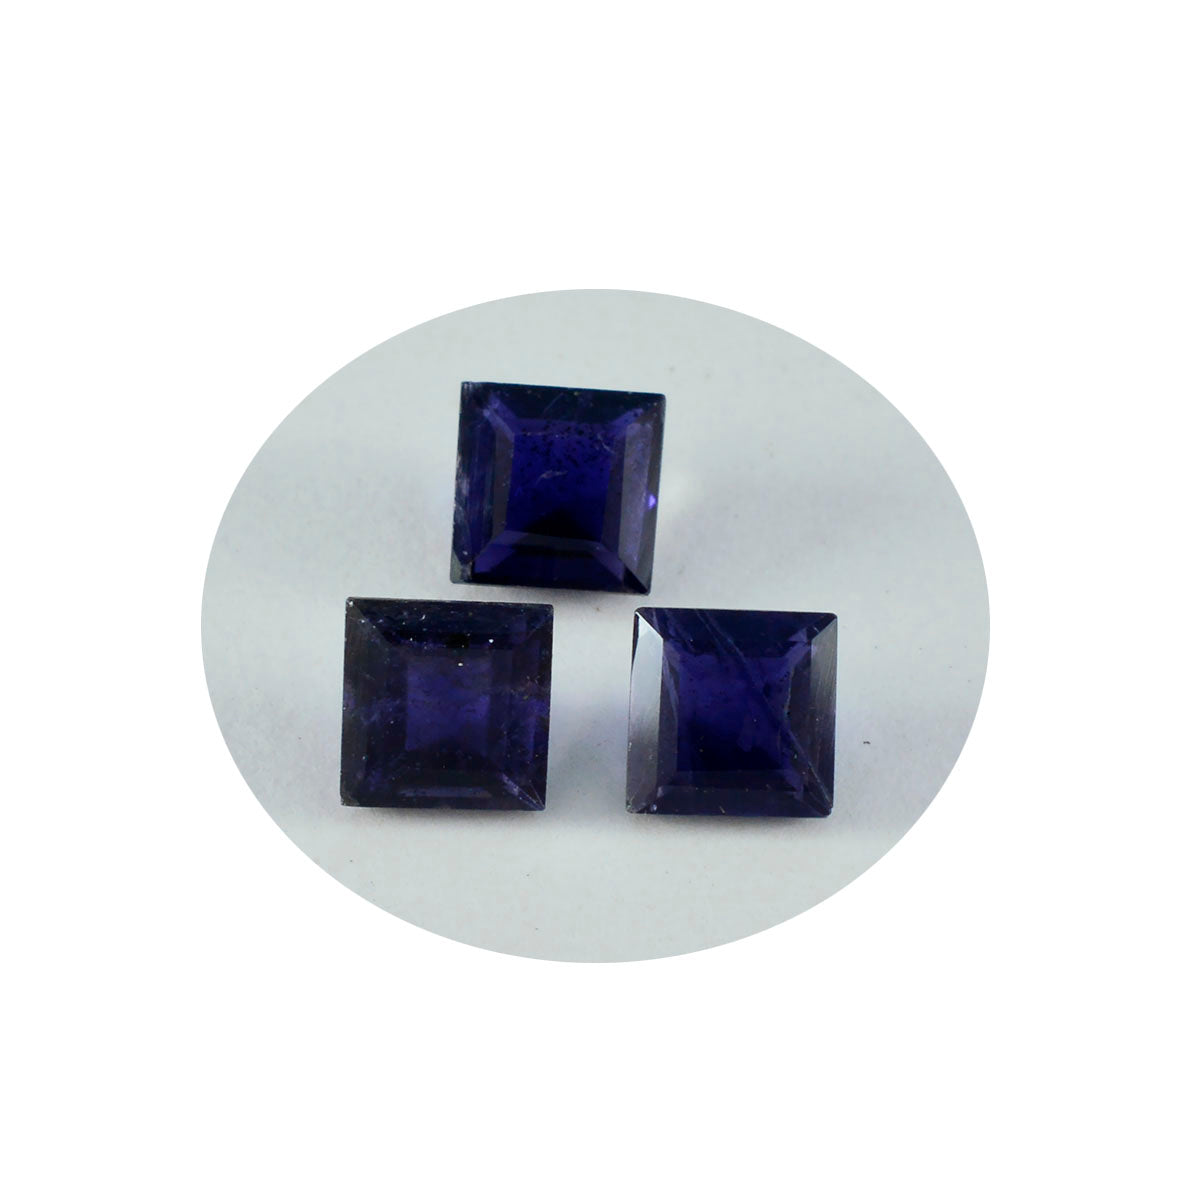 riyogems 1 шт. синий иолит ограненный 11x11 мм квадратной формы хорошее качество свободный драгоценный камень